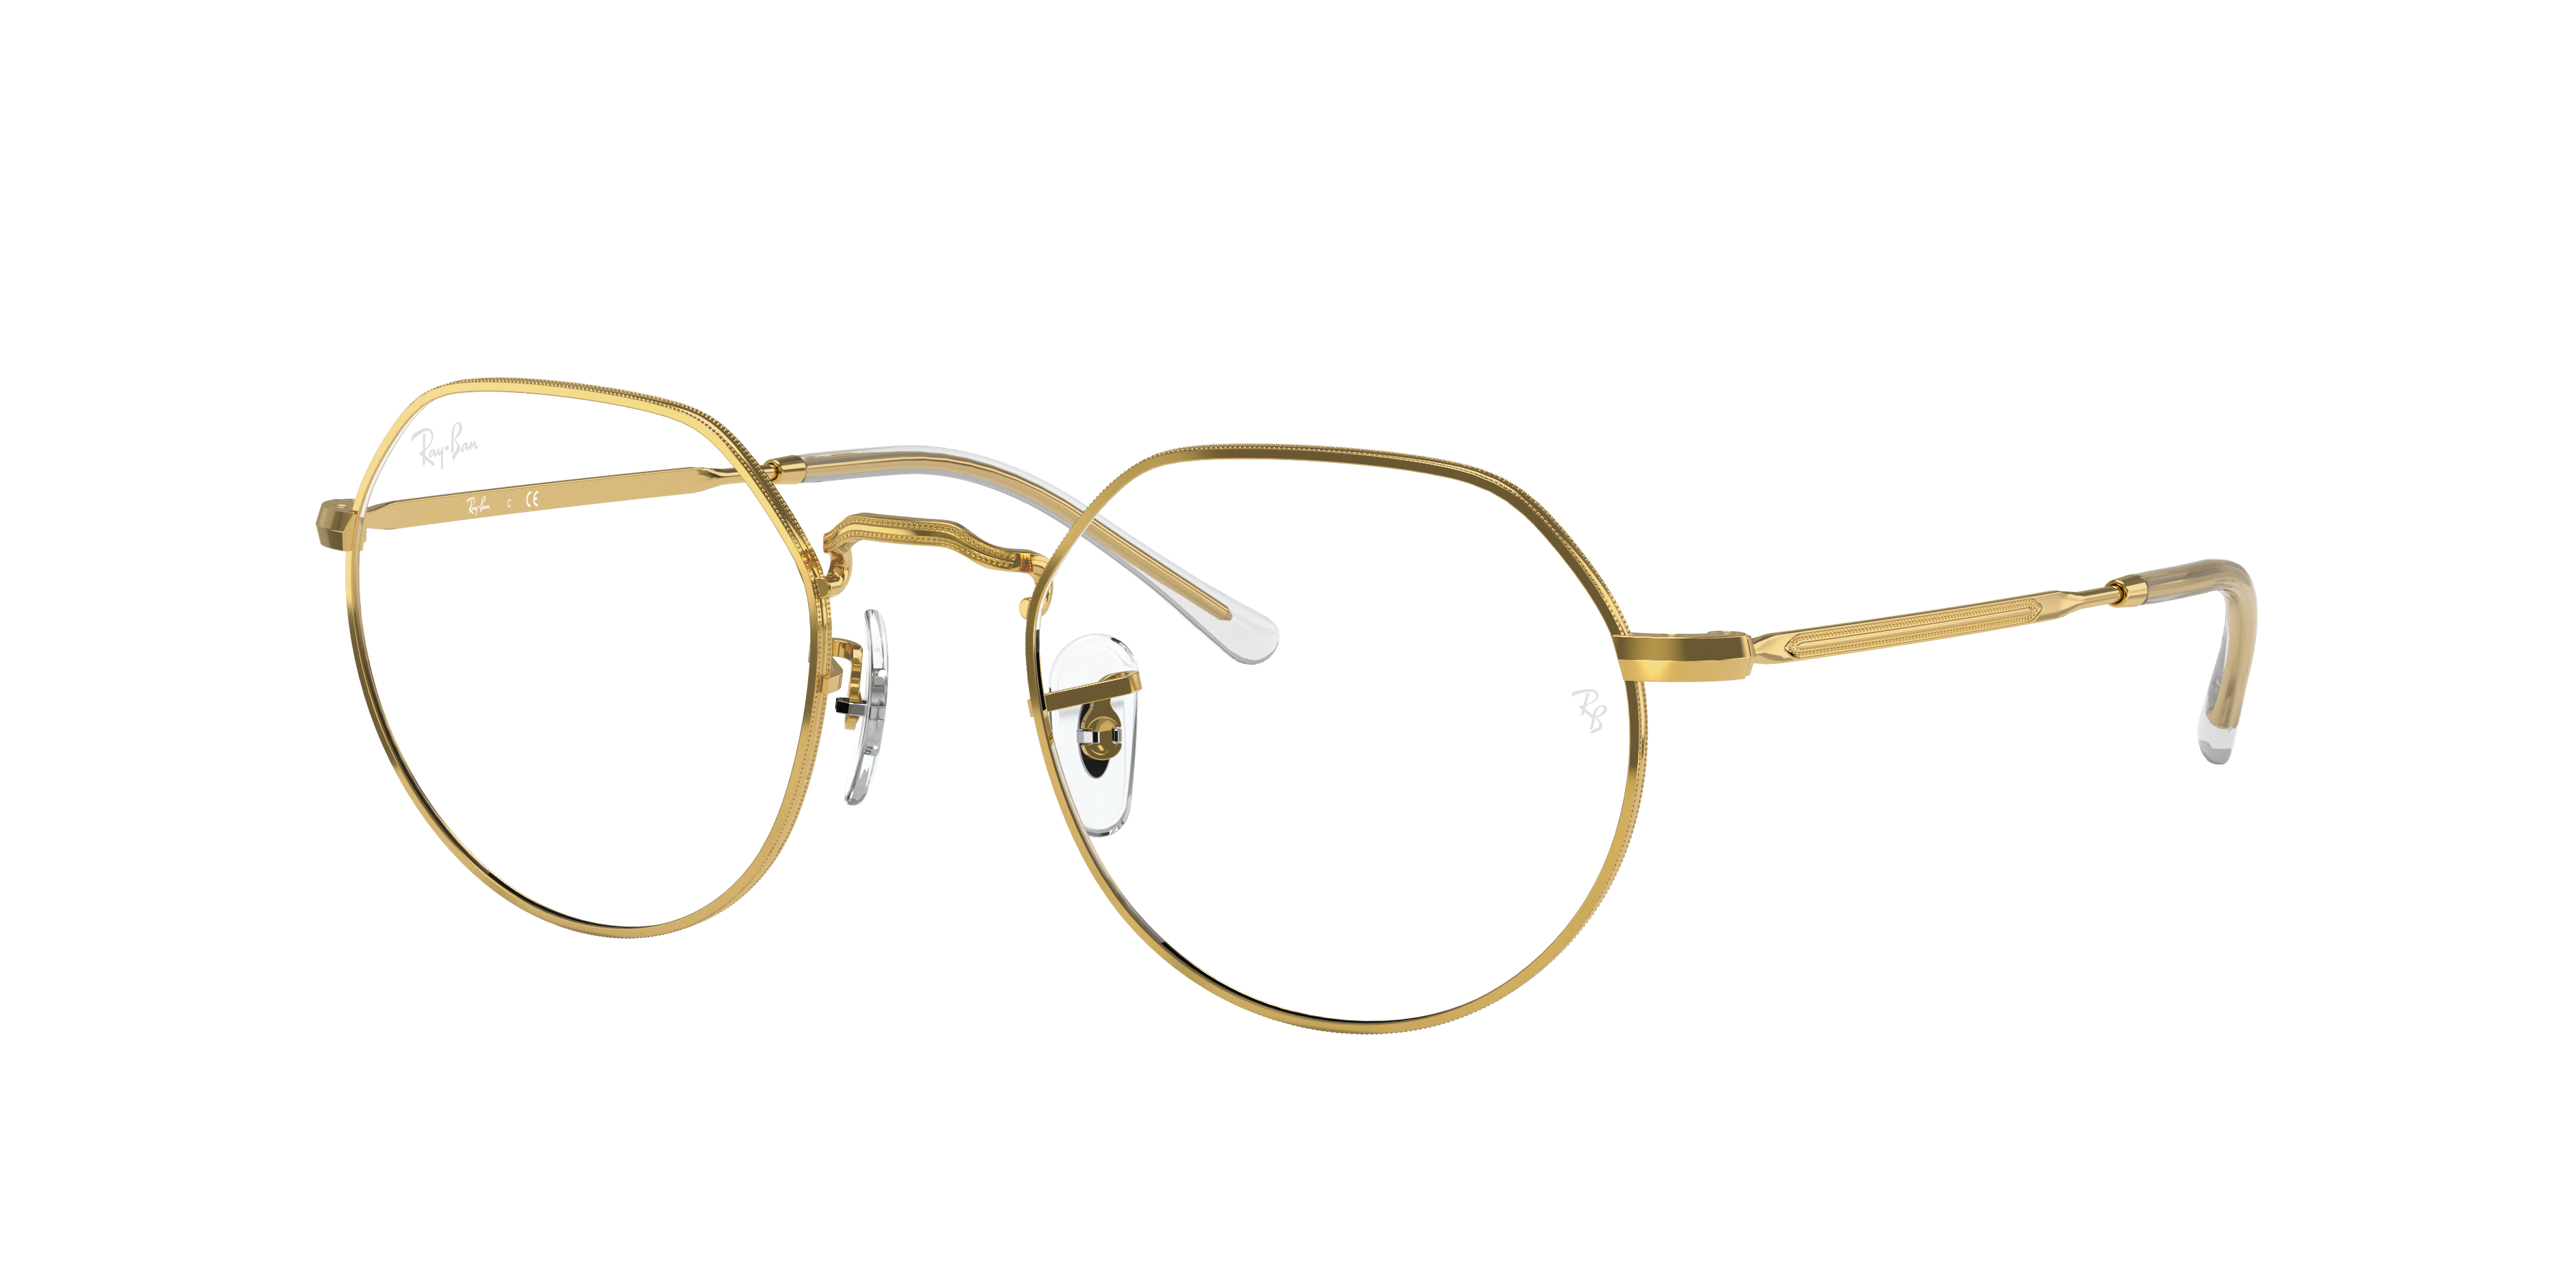 Jack Optics Eyeglasses with Gold Frame | Ray-Ban®